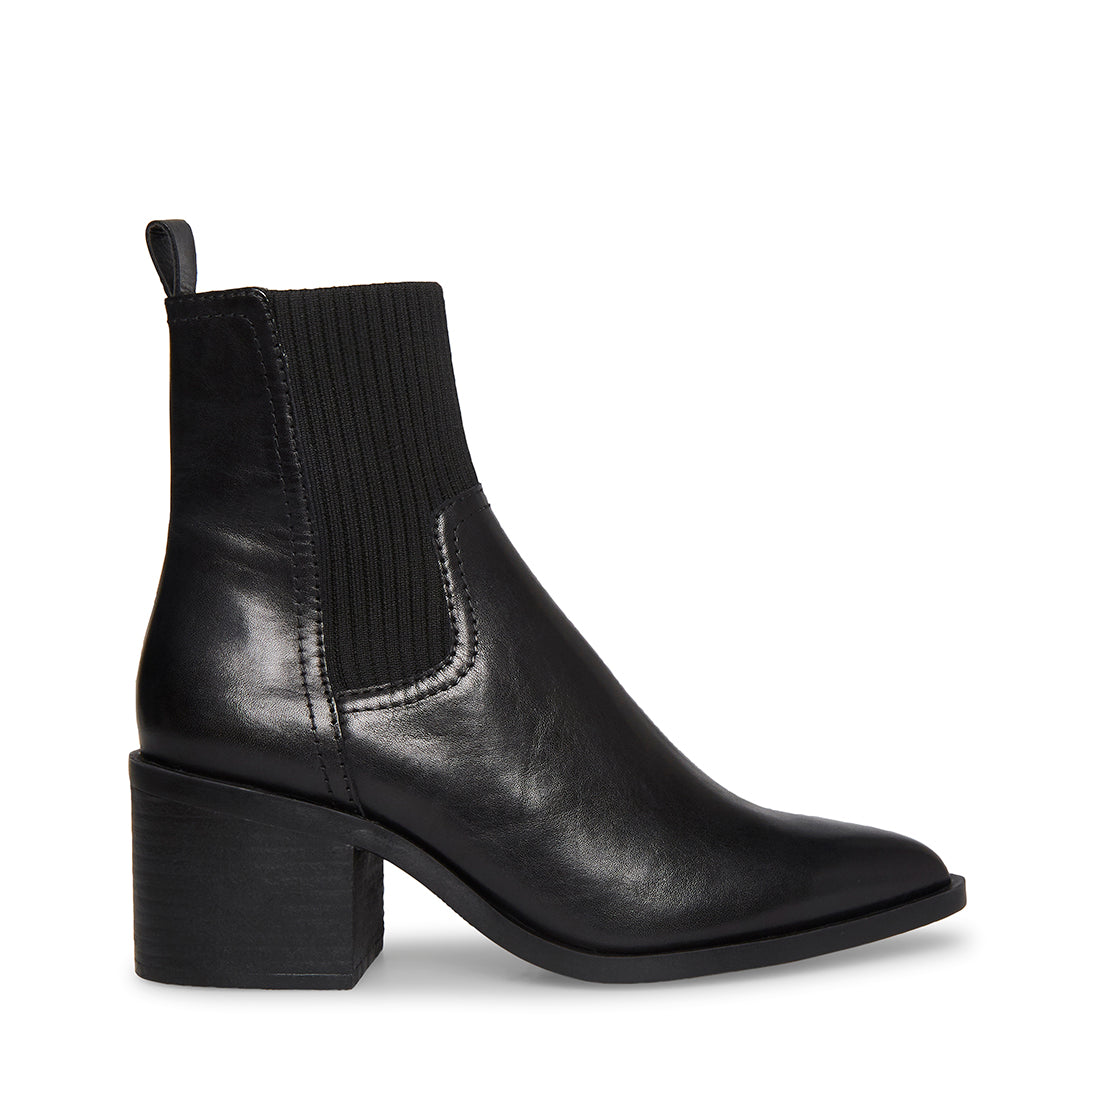 ABRIEL Black Leather Block Heel Booties | Women's Designer Booties ...